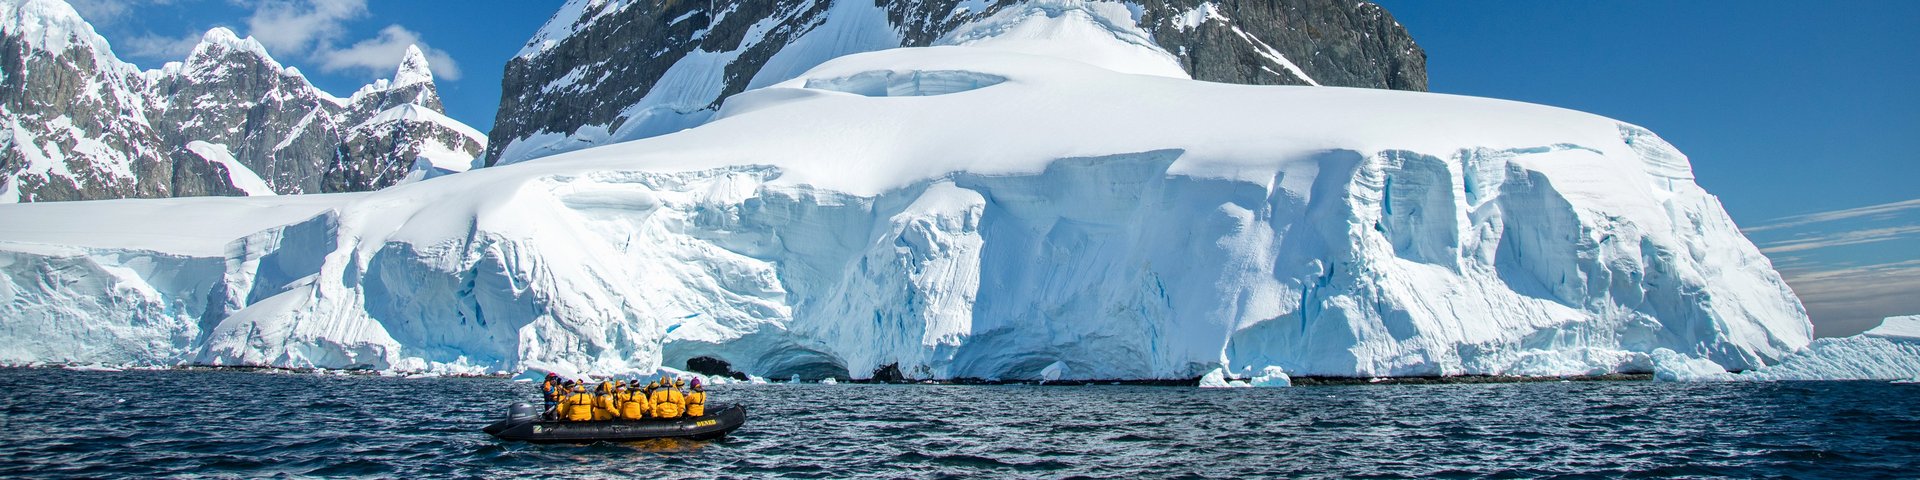 Gletscherfront mit Zodiac in Antarctica